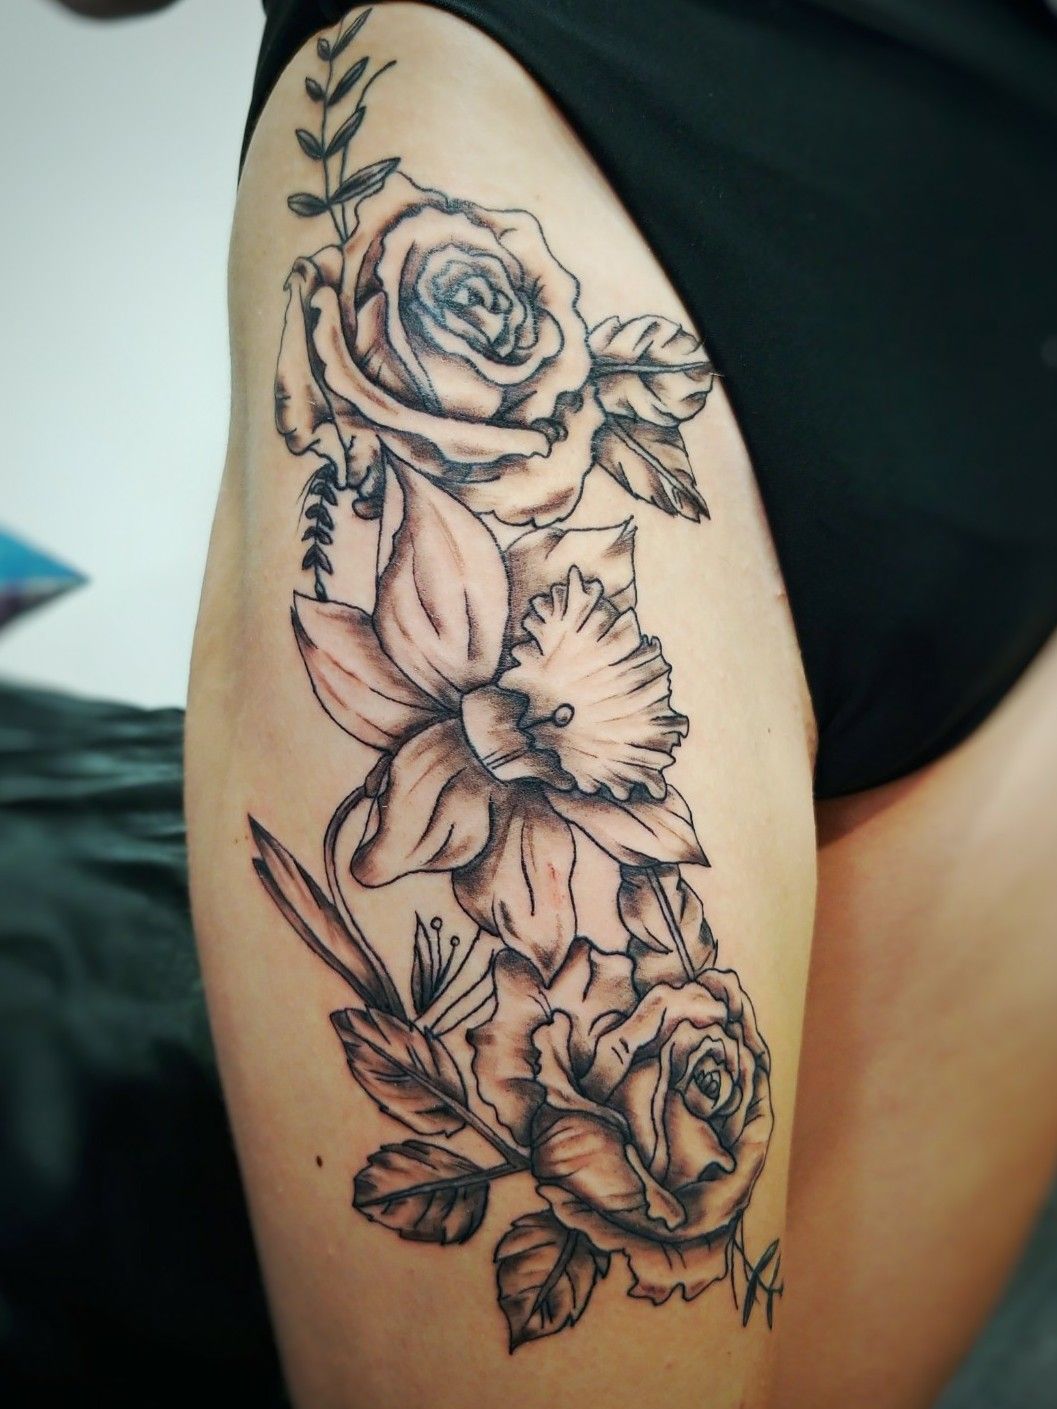 Daffodil and rose tattoo with stars  Tattoos Rose tattoo Geometric tattoo